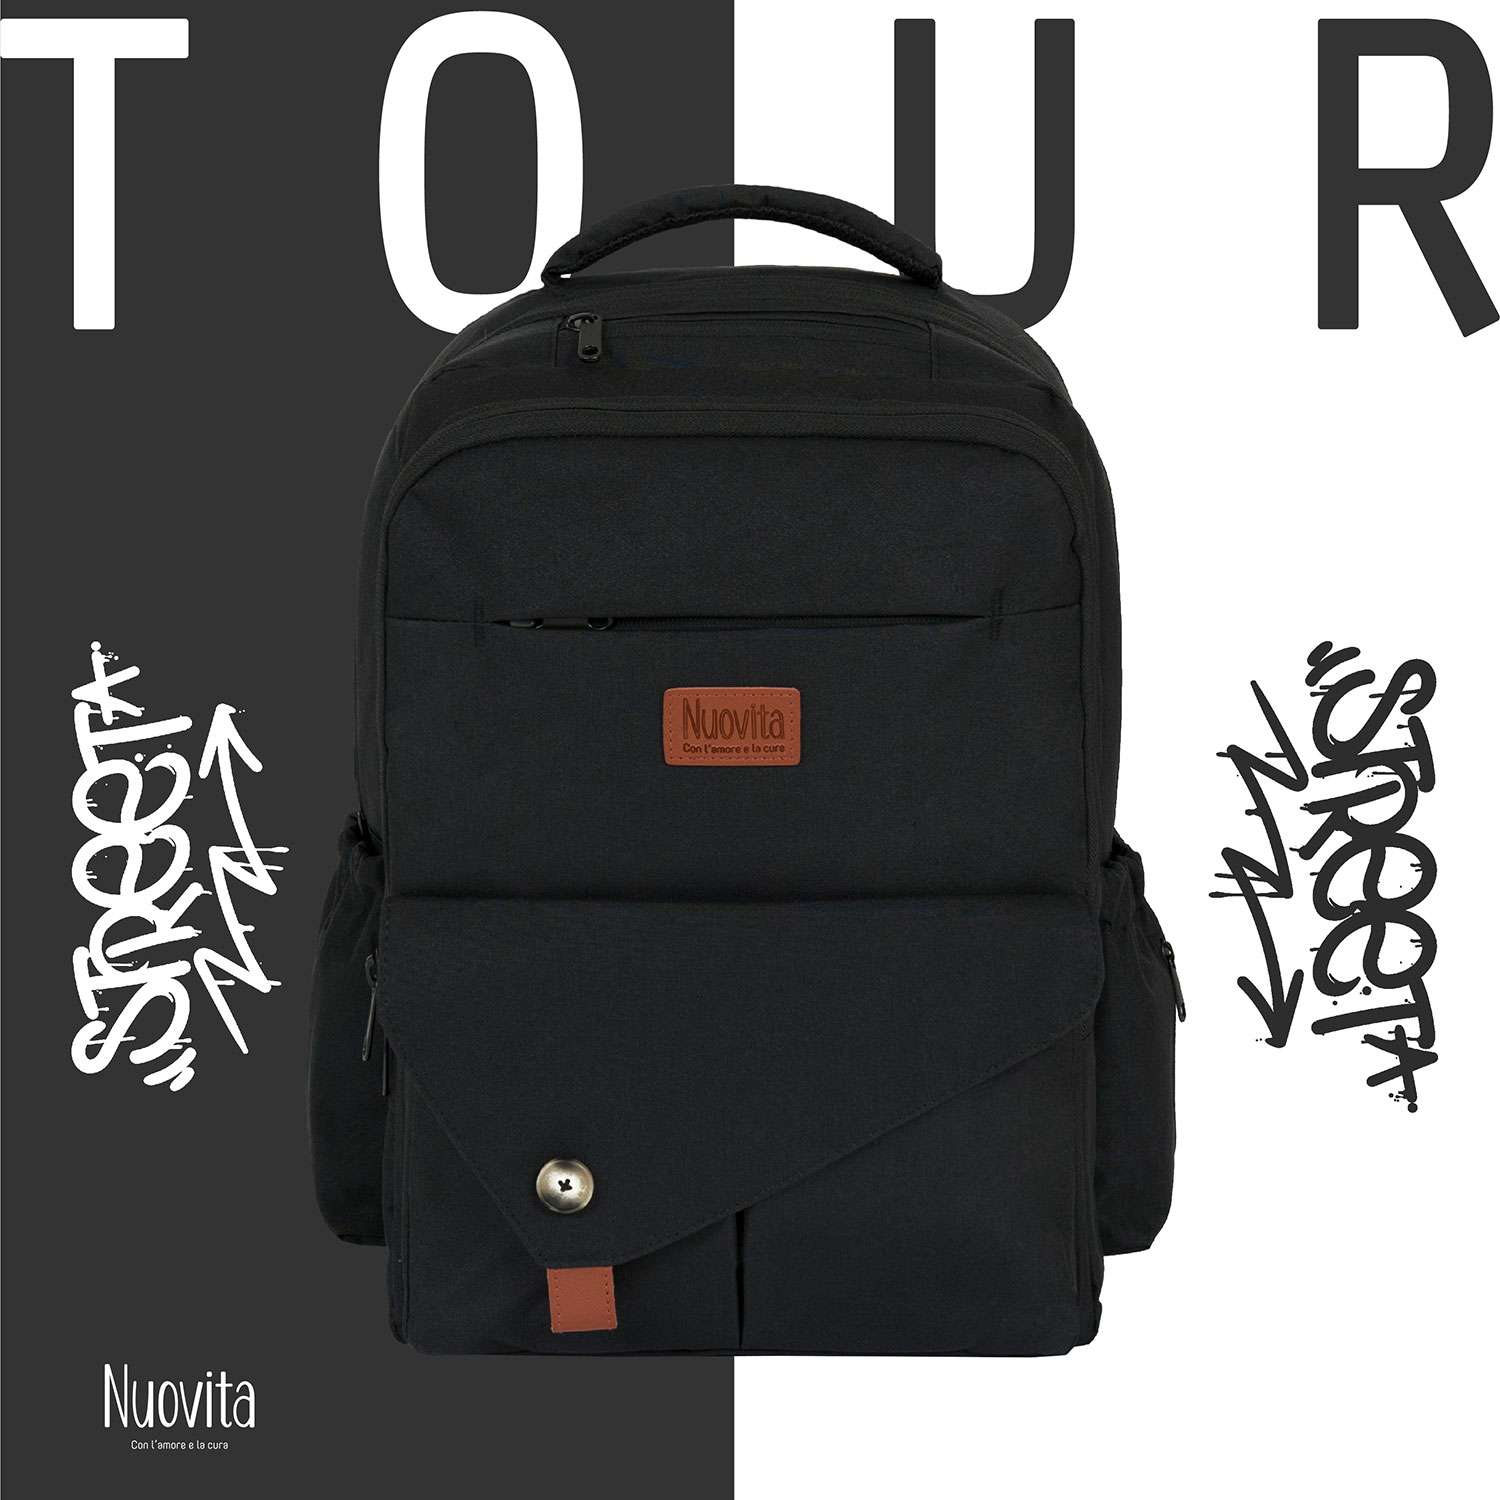 Рюкзак для мамы Nuovita CAPCAP tour Nero/Черный - фото 2